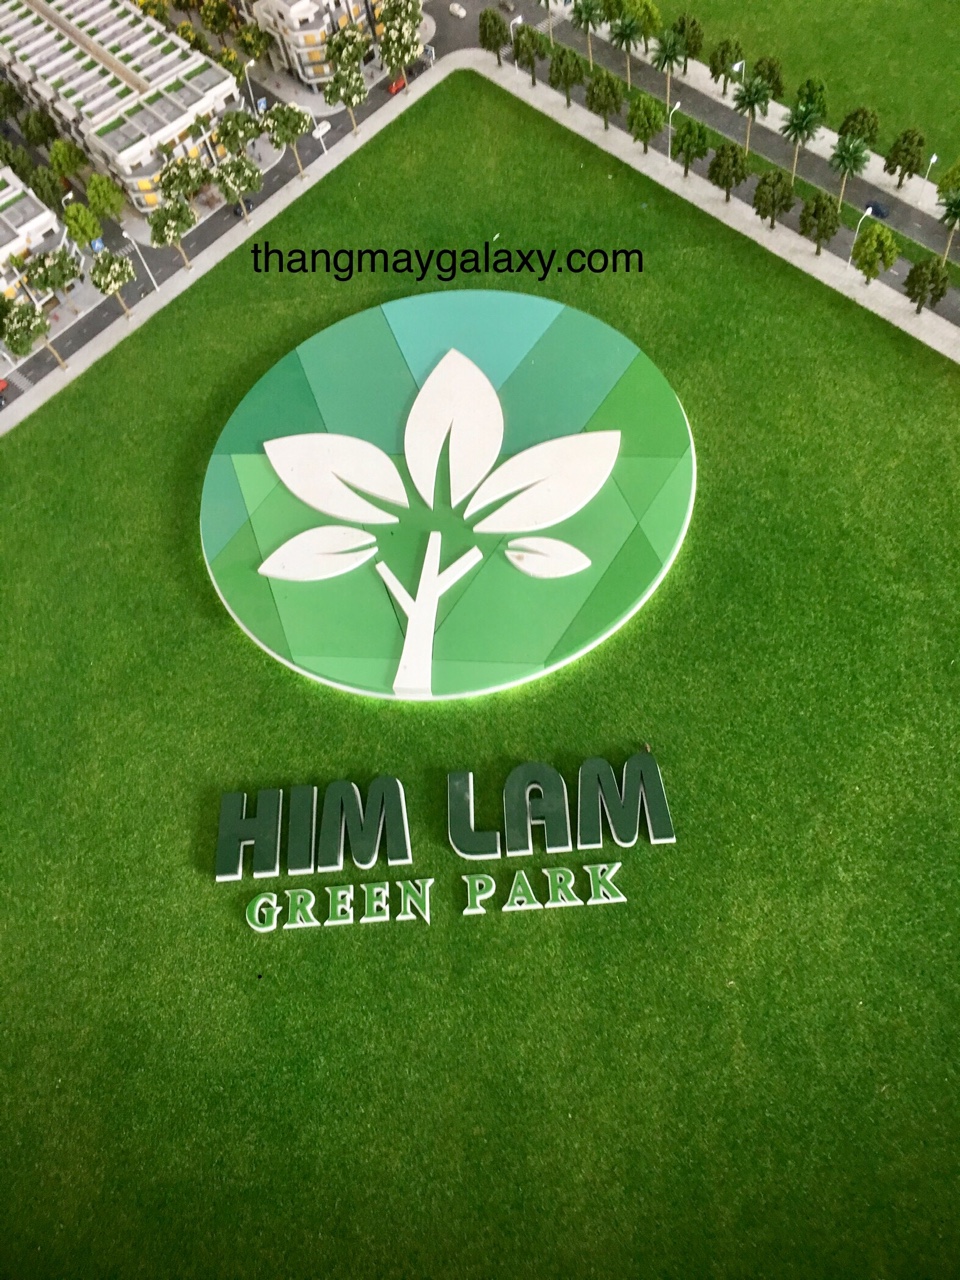 Dự án Himlam Bắc Ninh sử dụng thang máy Galaxy 450kg